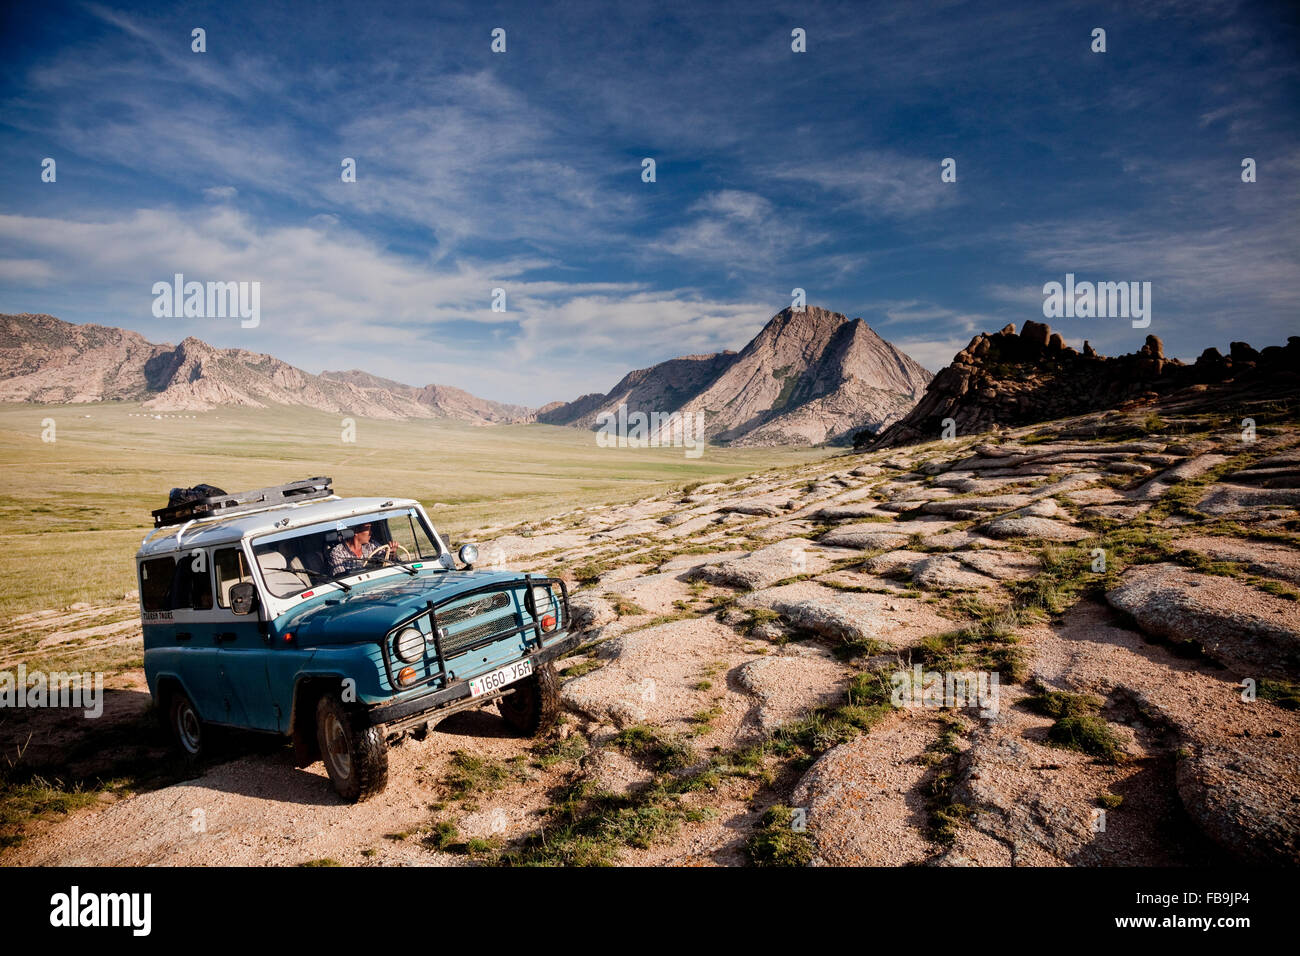 Un 4X4 Russe en action dans le désert de Gobi, en Mongolie. Banque D'Images